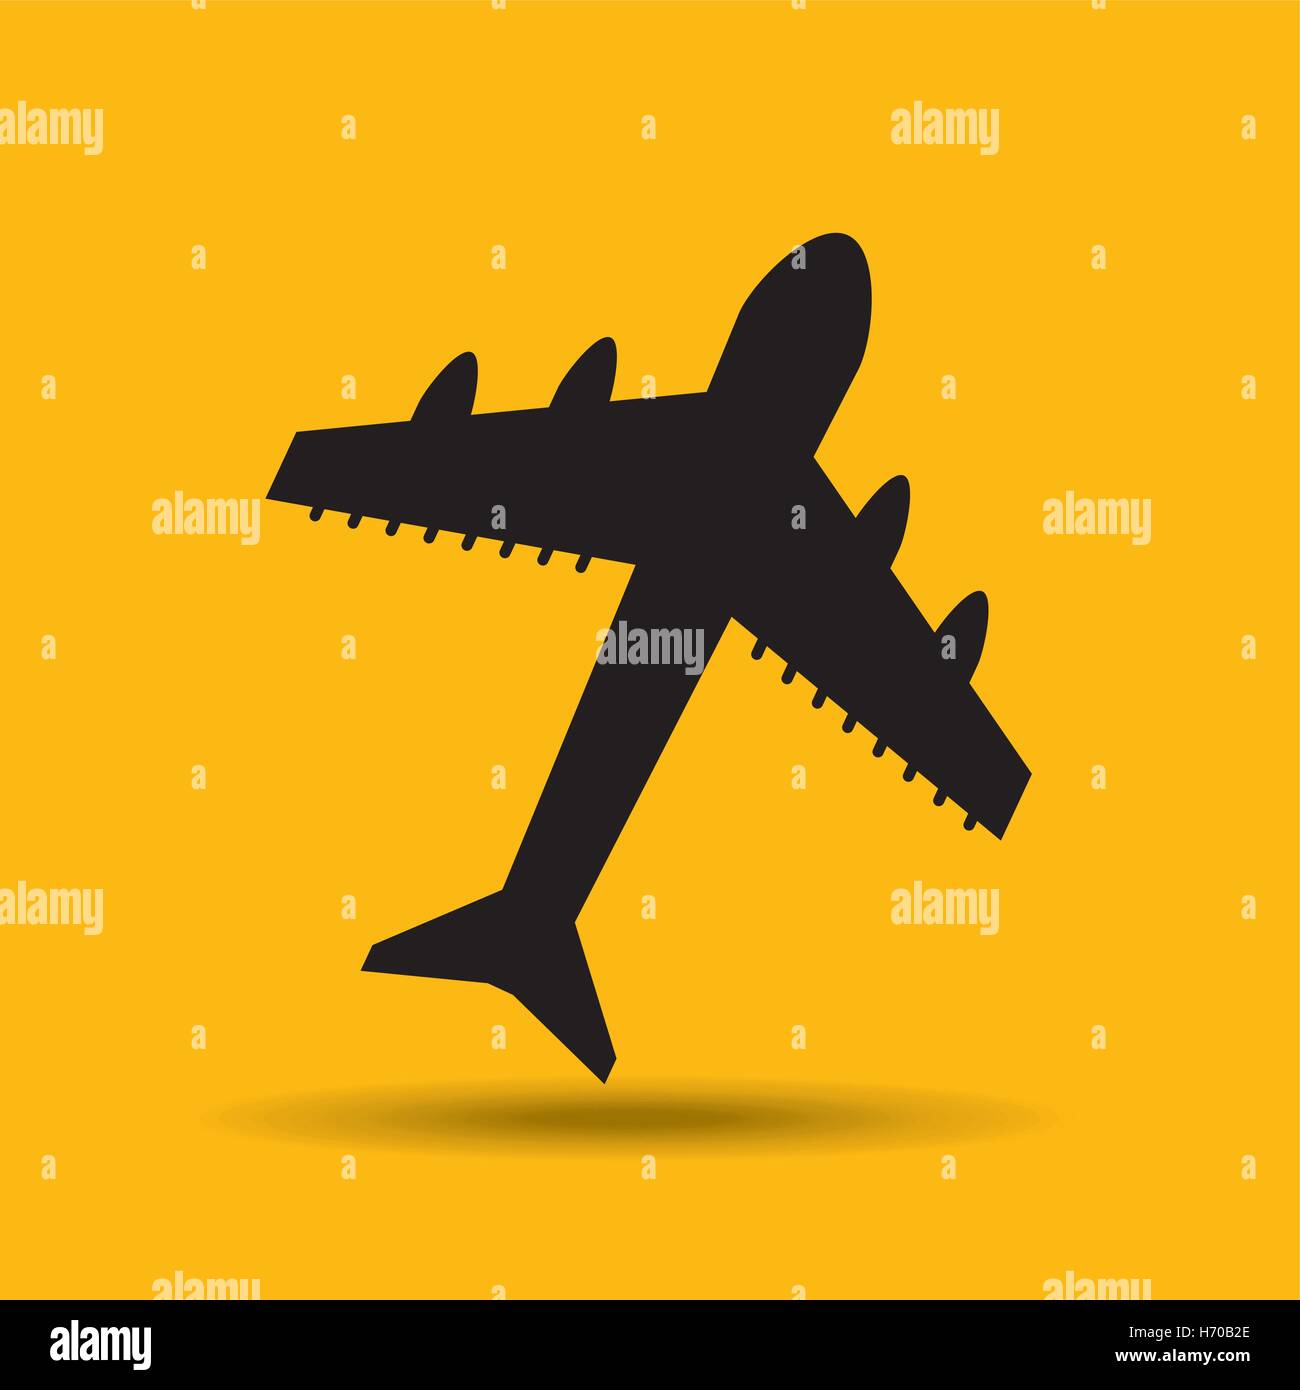 Reisen Sie Transport Flughafen Flugzeug Taste Konzeption, Vektor-Illustration-Grafik Stock Vektor